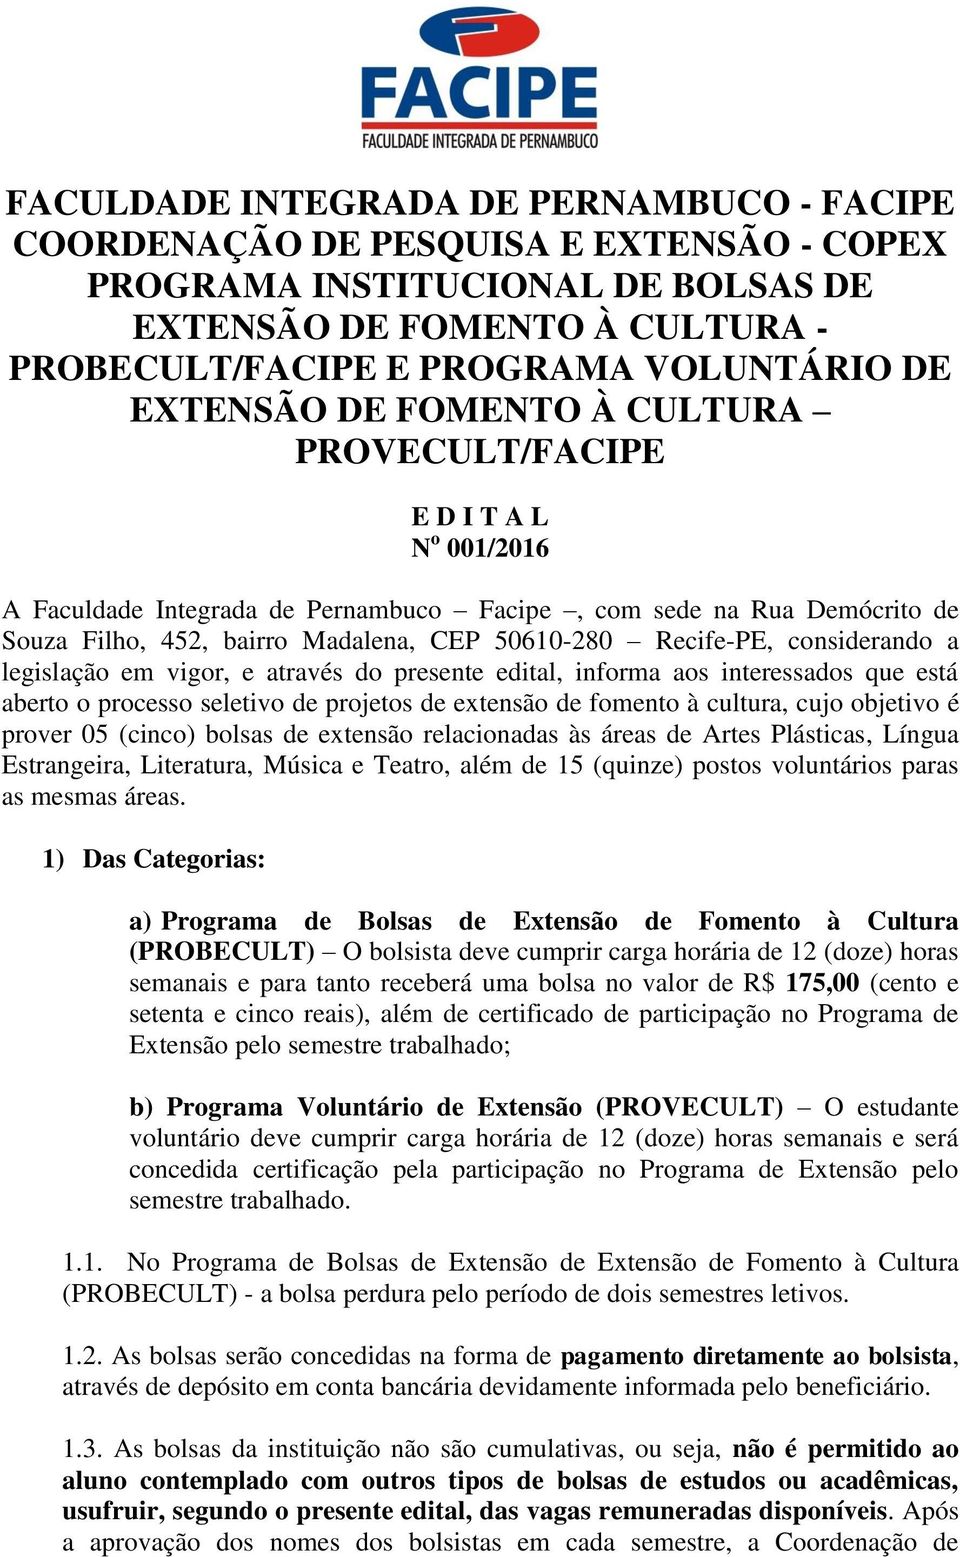 Recife-PE, considerando a legislação em vigor, e através do presente edital, informa aos interessados que está aberto o processo seletivo de projetos de extensão de fomento à cultura, cujo objetivo é